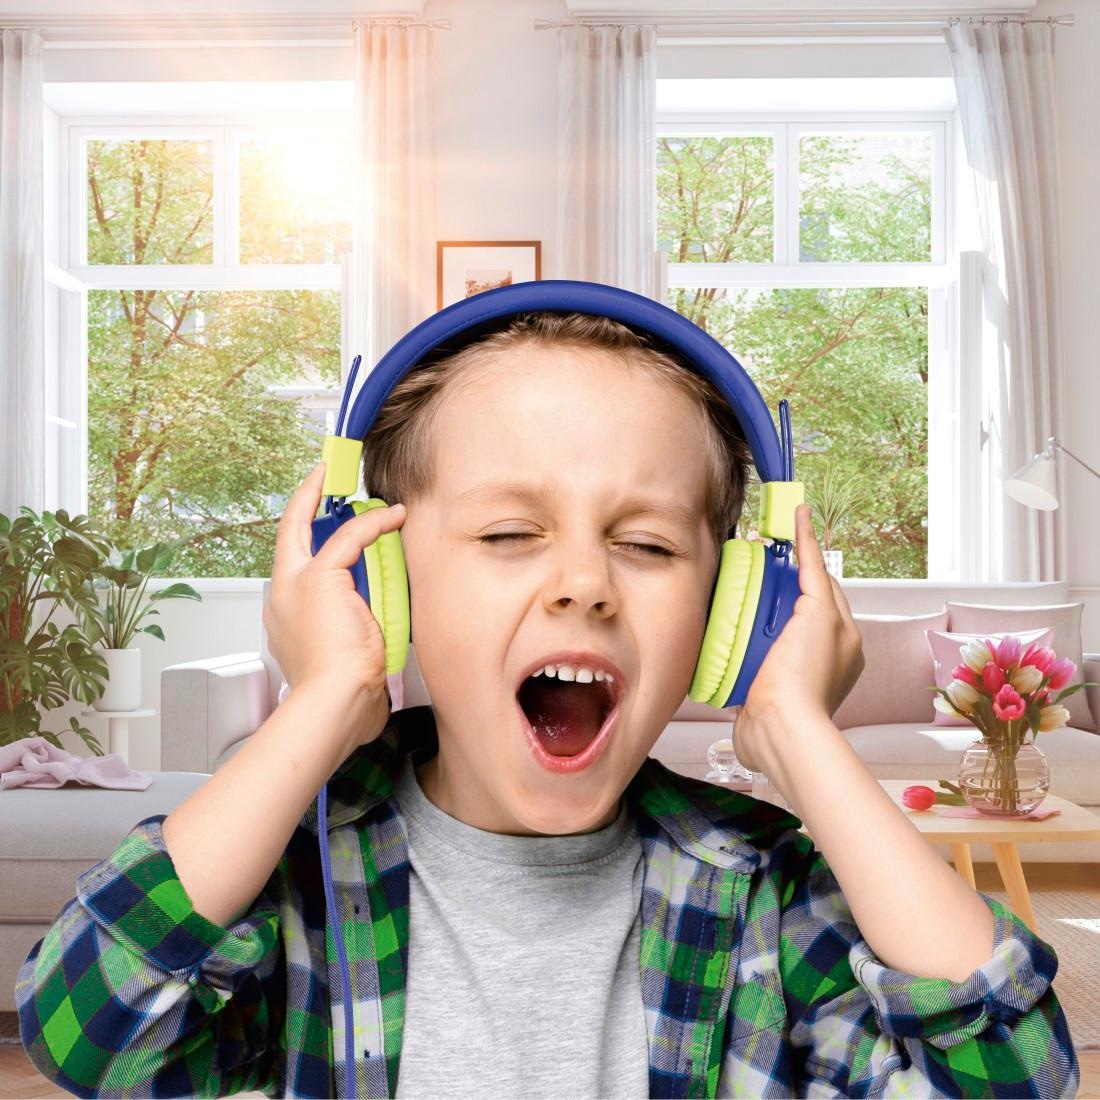 Thomson On-Ear-Kopfhörer »Kinderkopfhörer mit Kabel On-Ear, Lautstärkebegrenzung auf 85dB leicht«, größenverstellbar zusammenfaltbar, weiterer Kopfhöreranschluss möglich